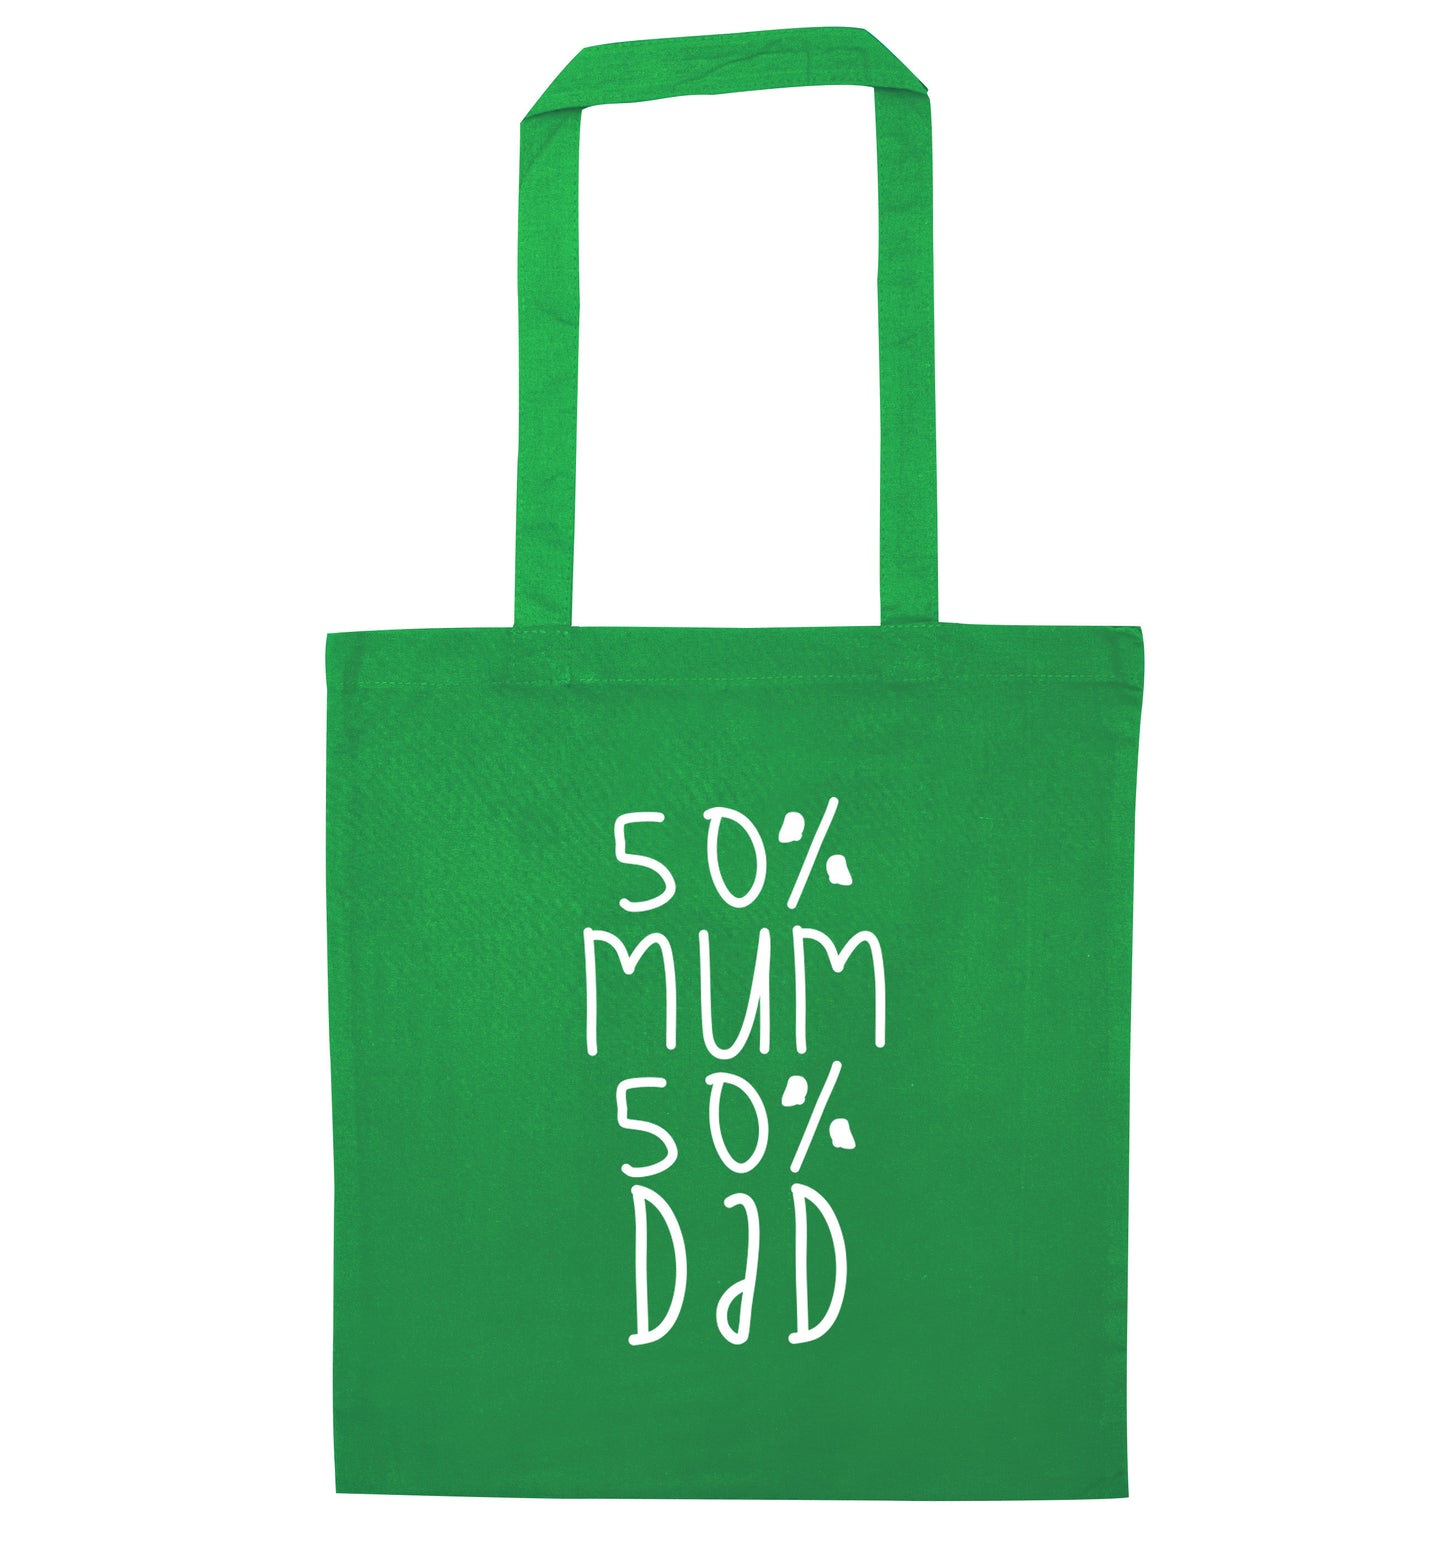 50% mum 50% dad green tote bag